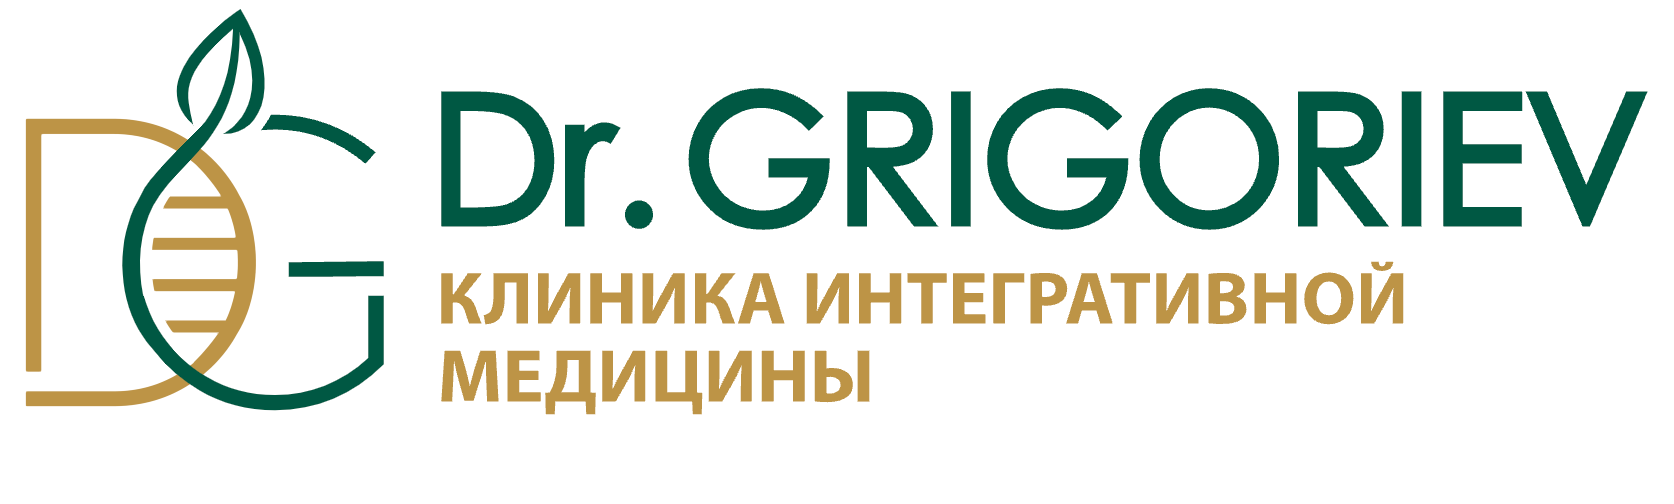 Клиника интегративной медицины доктора Григорьева в Москве.